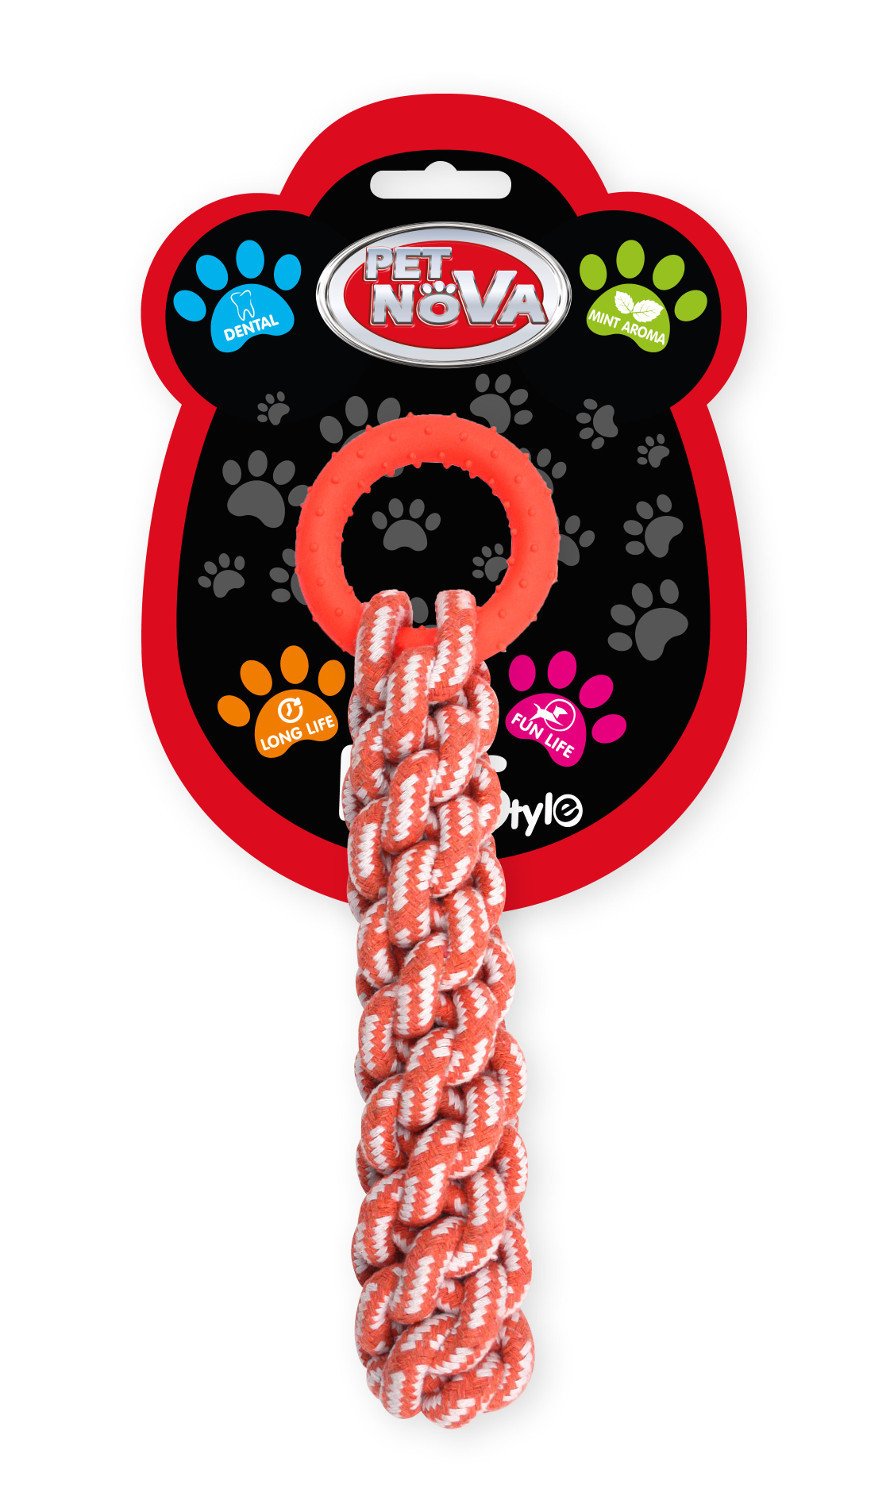 Pet Nova Gruby węzeł szvura zabawka dla psa pomara